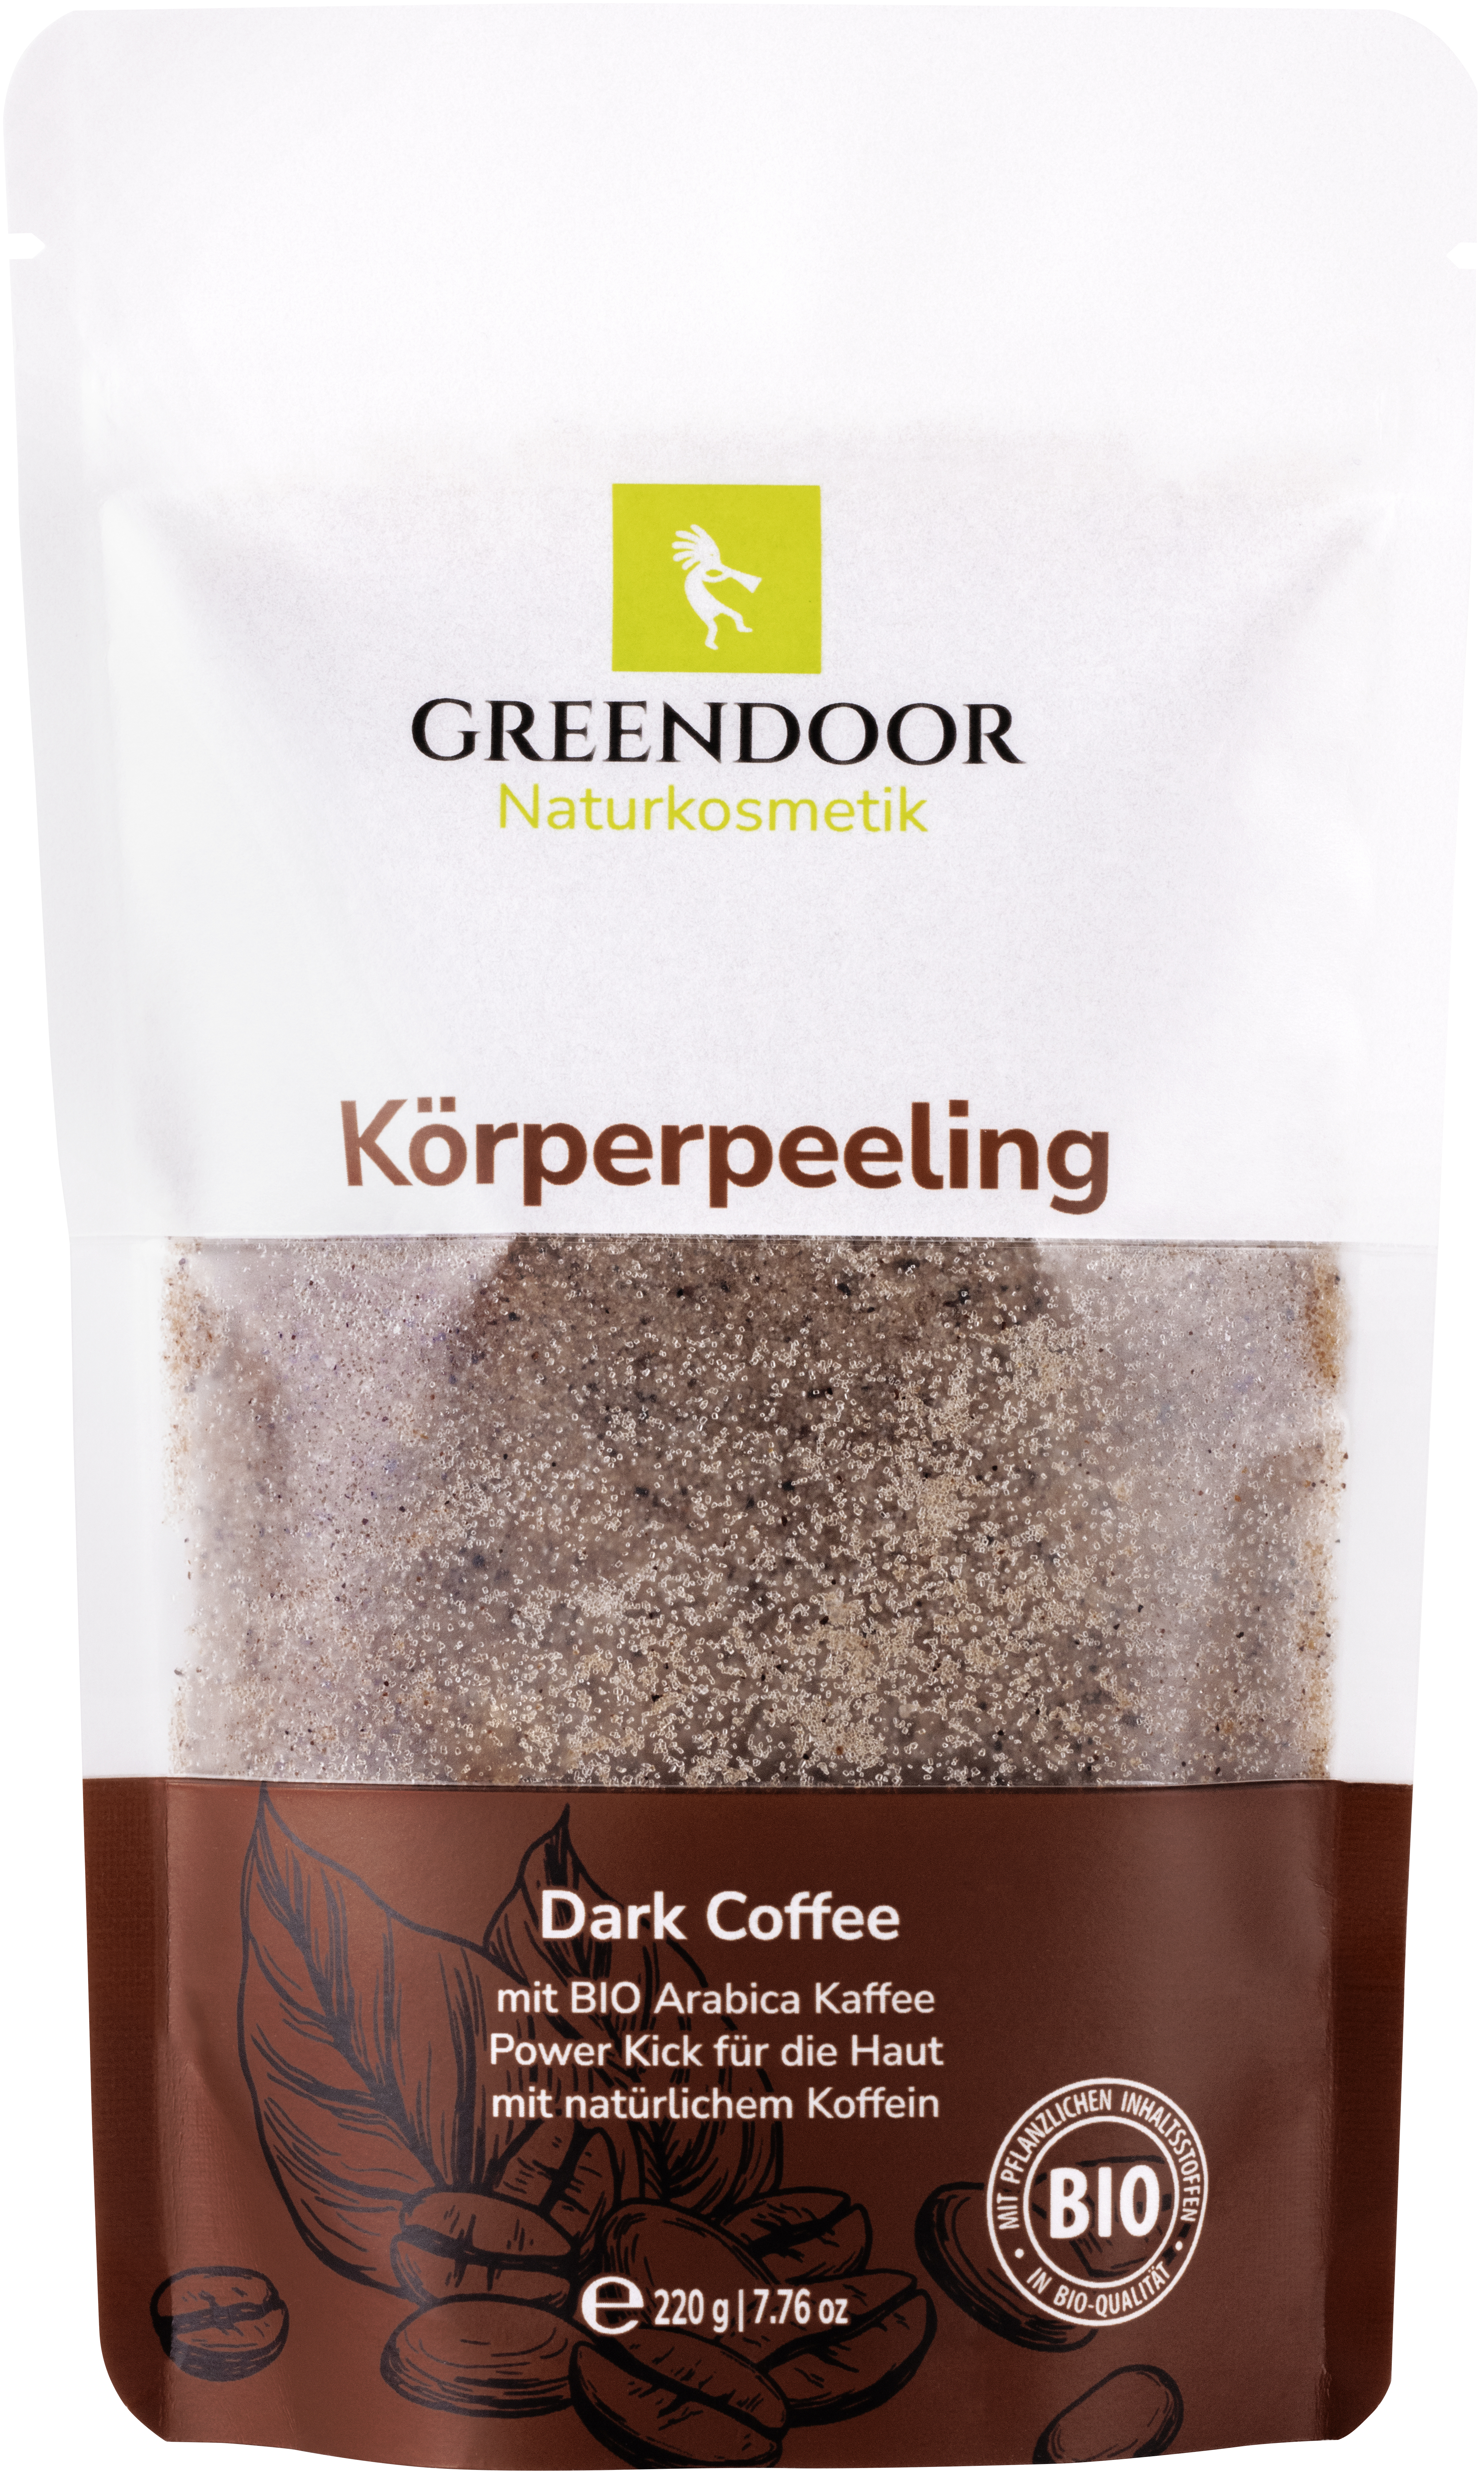 Körperpeeling Dark Coffee Sugar Scrub 220g, fördert Durchblutung und Zellerneuerung, anti aging